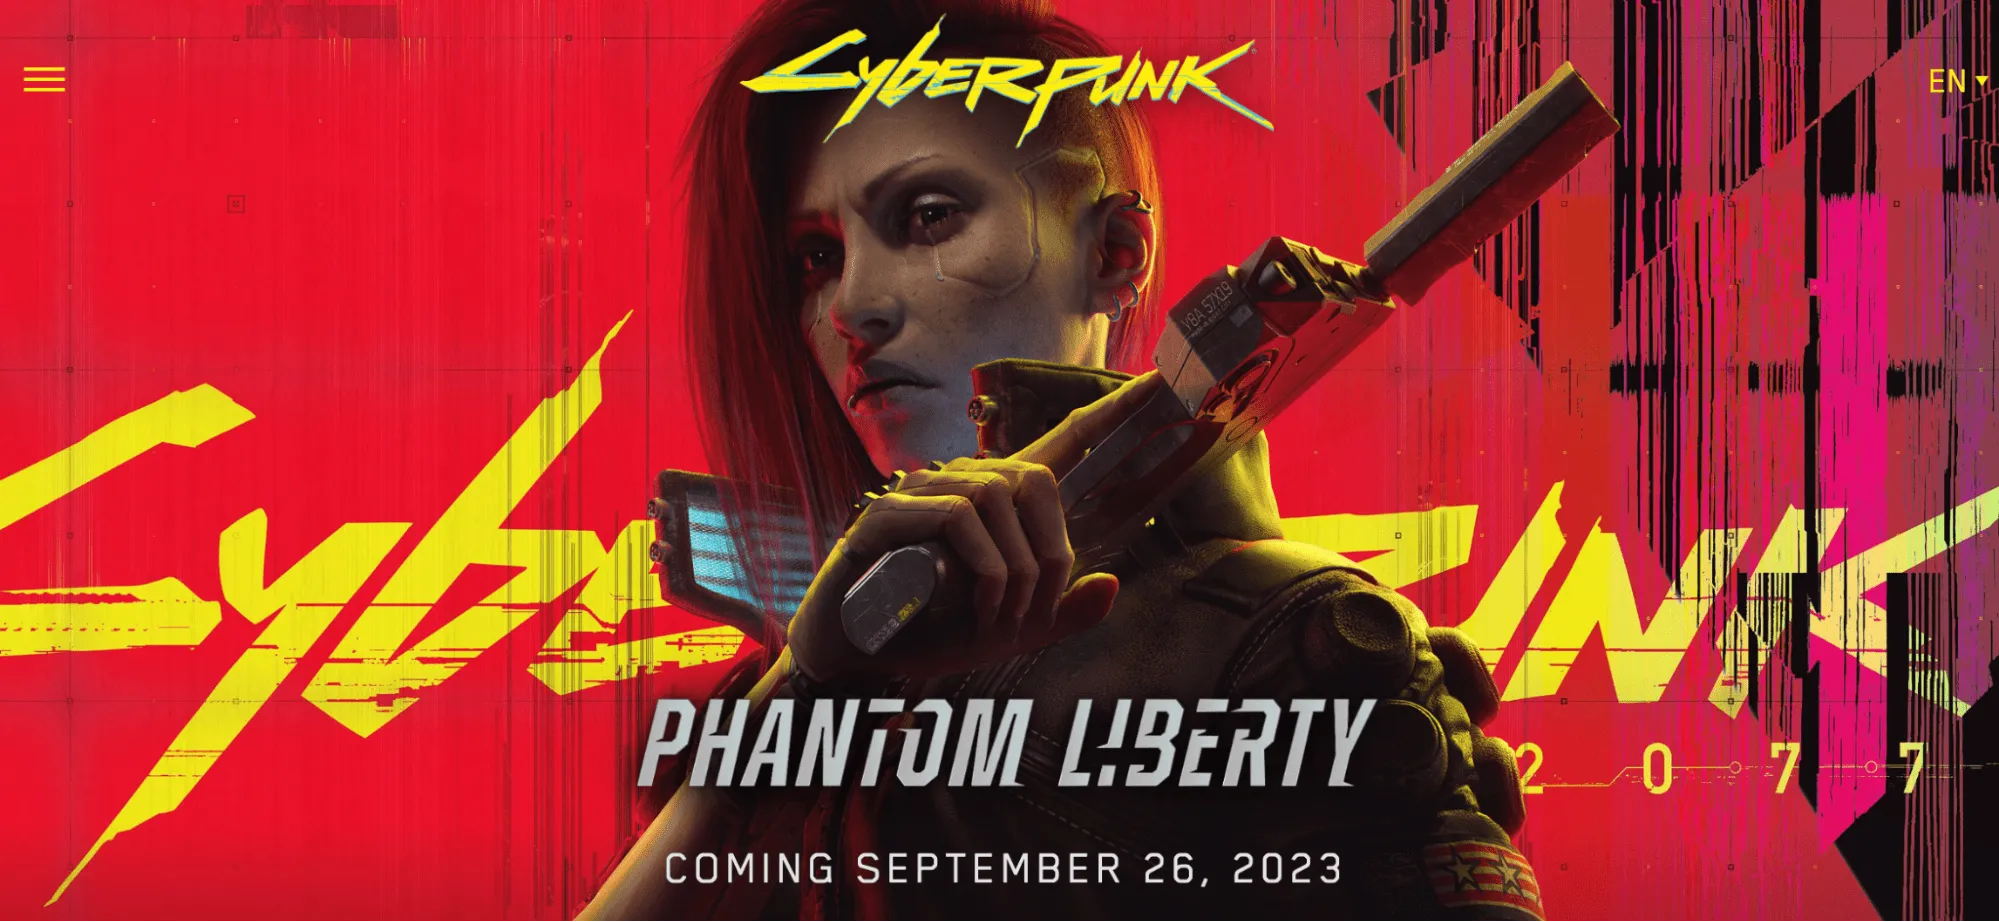 cyberpunk2077: phantom liberty screenshot